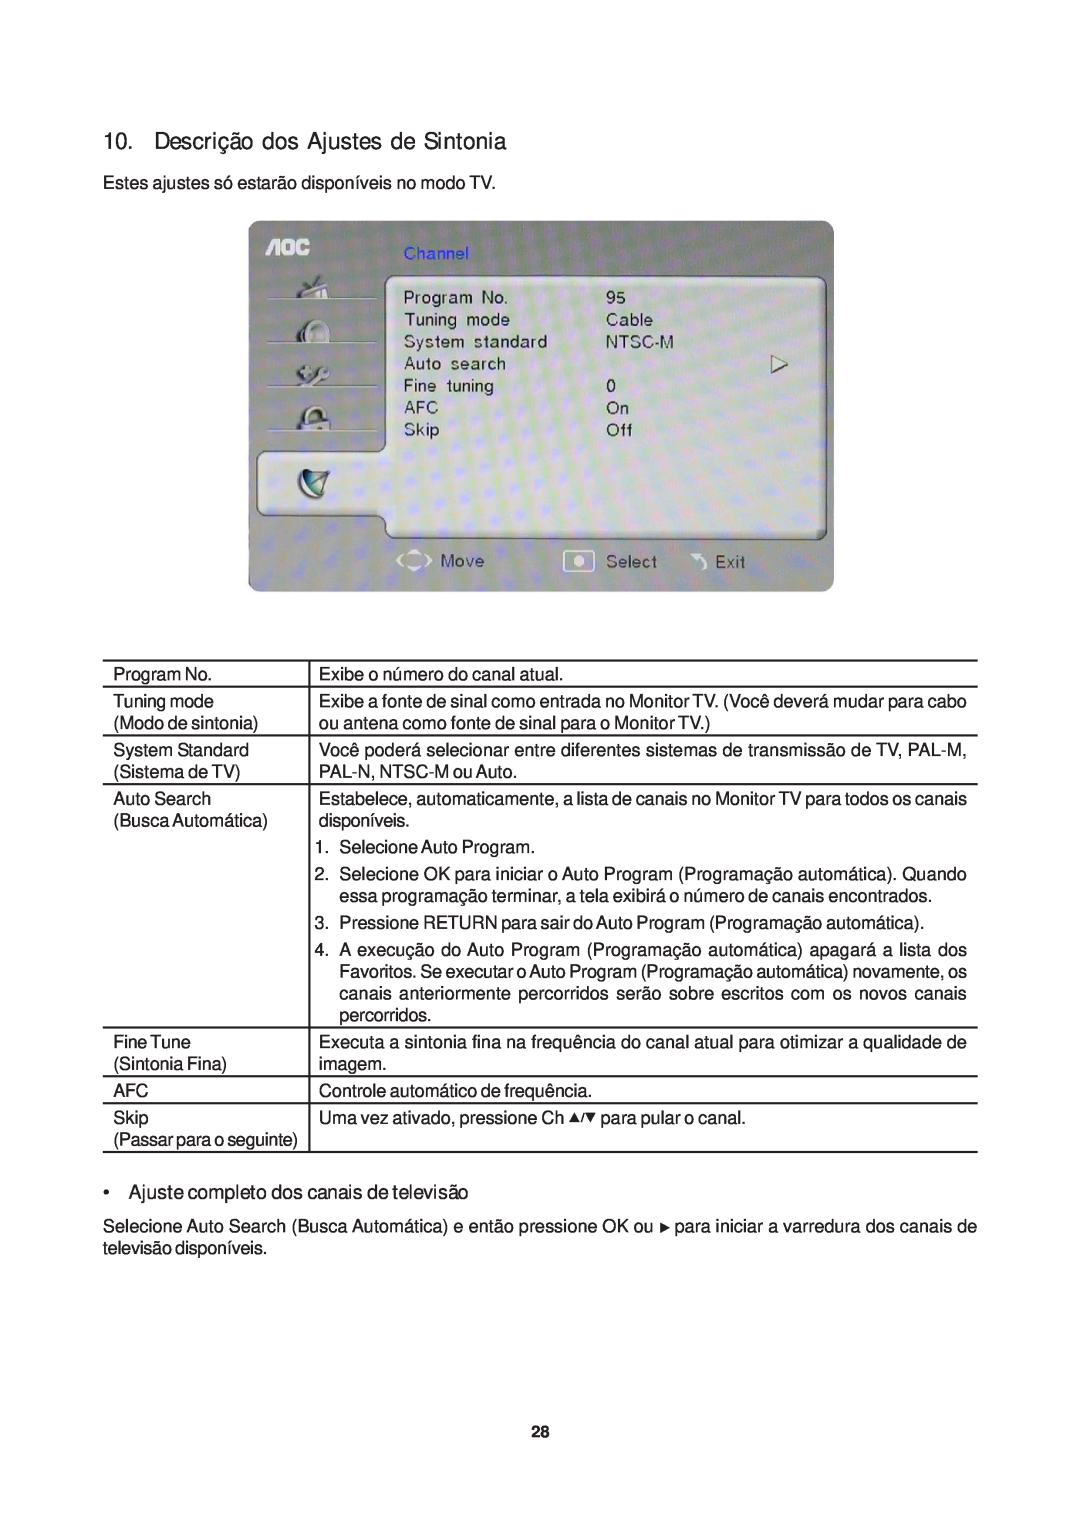 AOC T942WE, T2242WE, T2442E manual Descrição dos Ajustes de Sintonia, Ajuste completo dos canais de televisão 